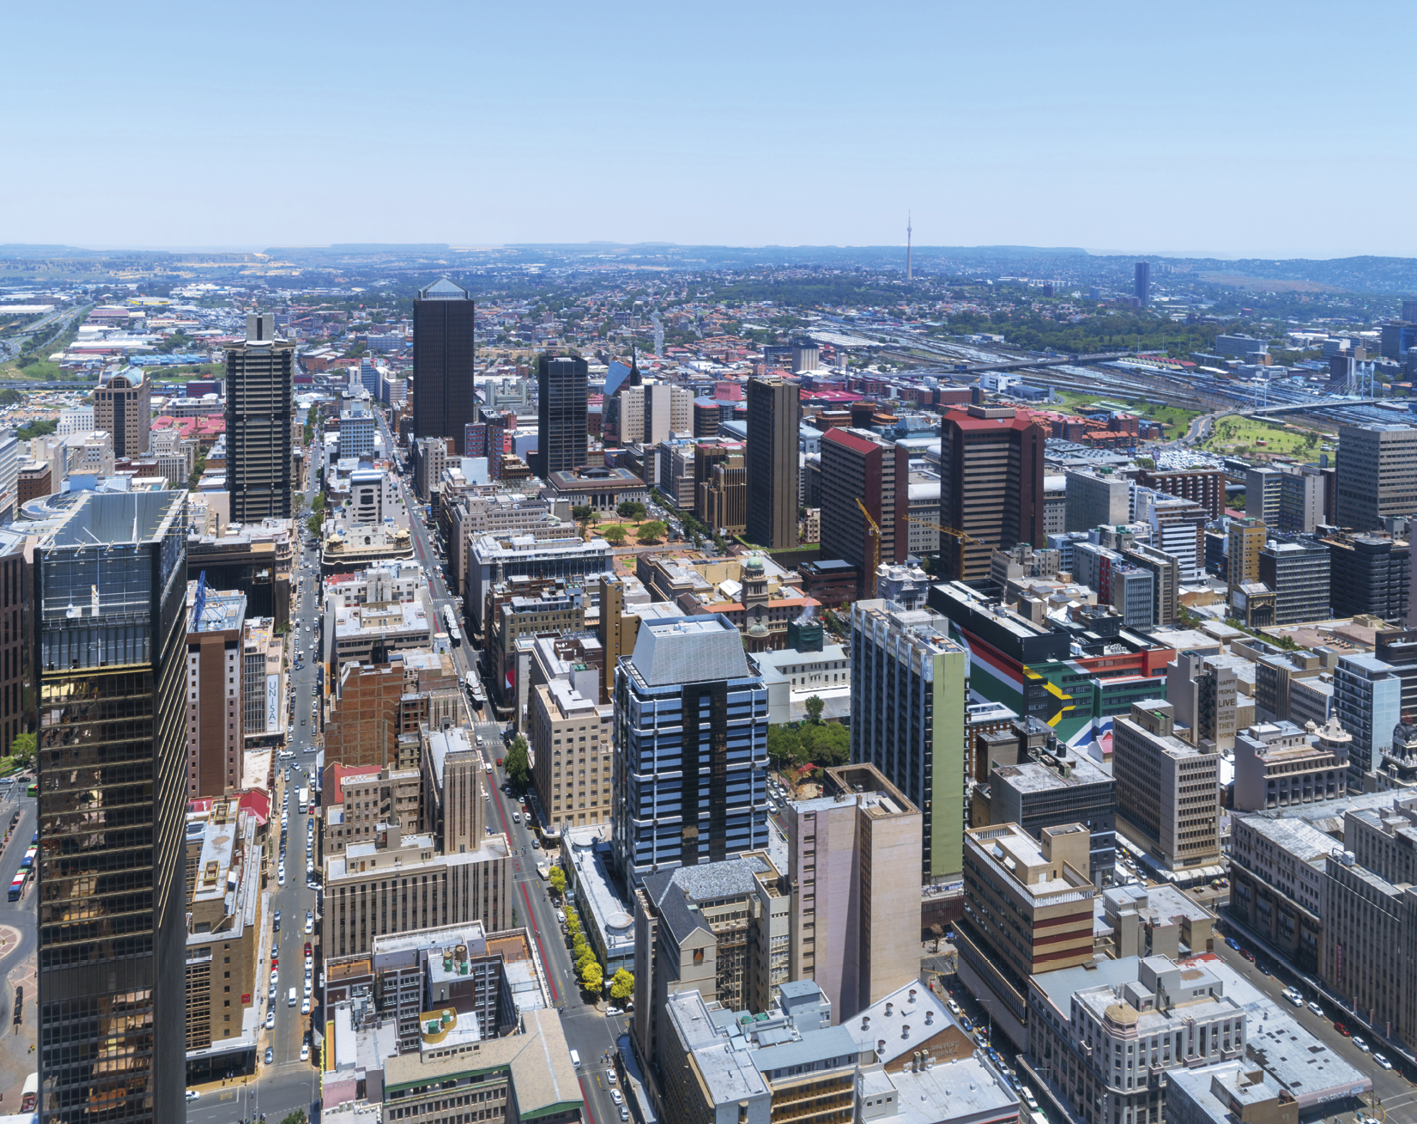 Fotografia aérea. Vista de cidade com muitos prédios, de tamanhos variados e longas avenidas.